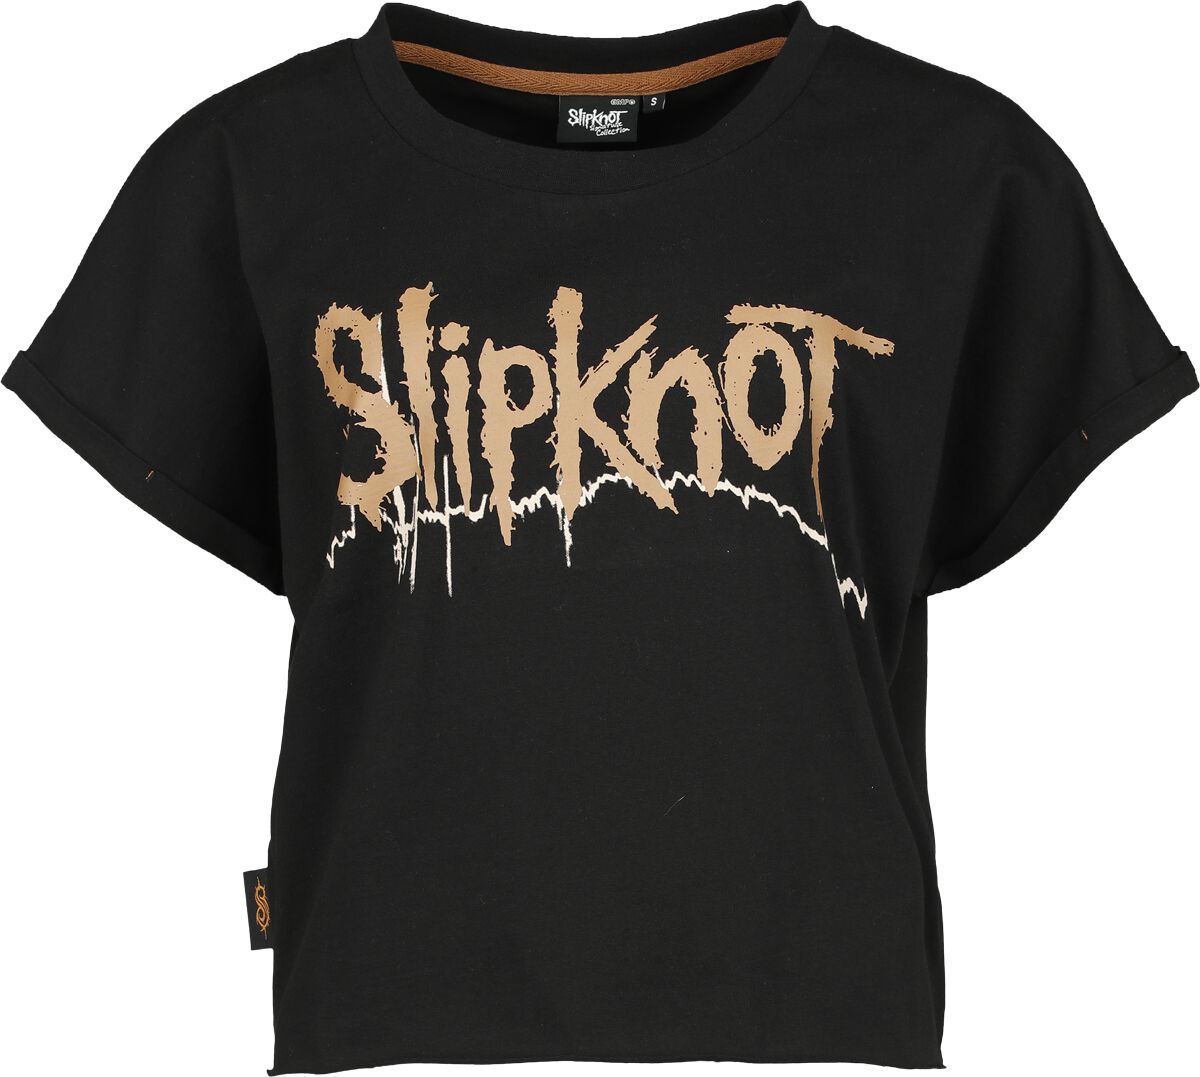 Slipknot T-Shirt - EMP Signature Collection - XS bis 3XL - für Damen - Größe L - schwarz  - EMP exklusives Merchandise! von Slipknot